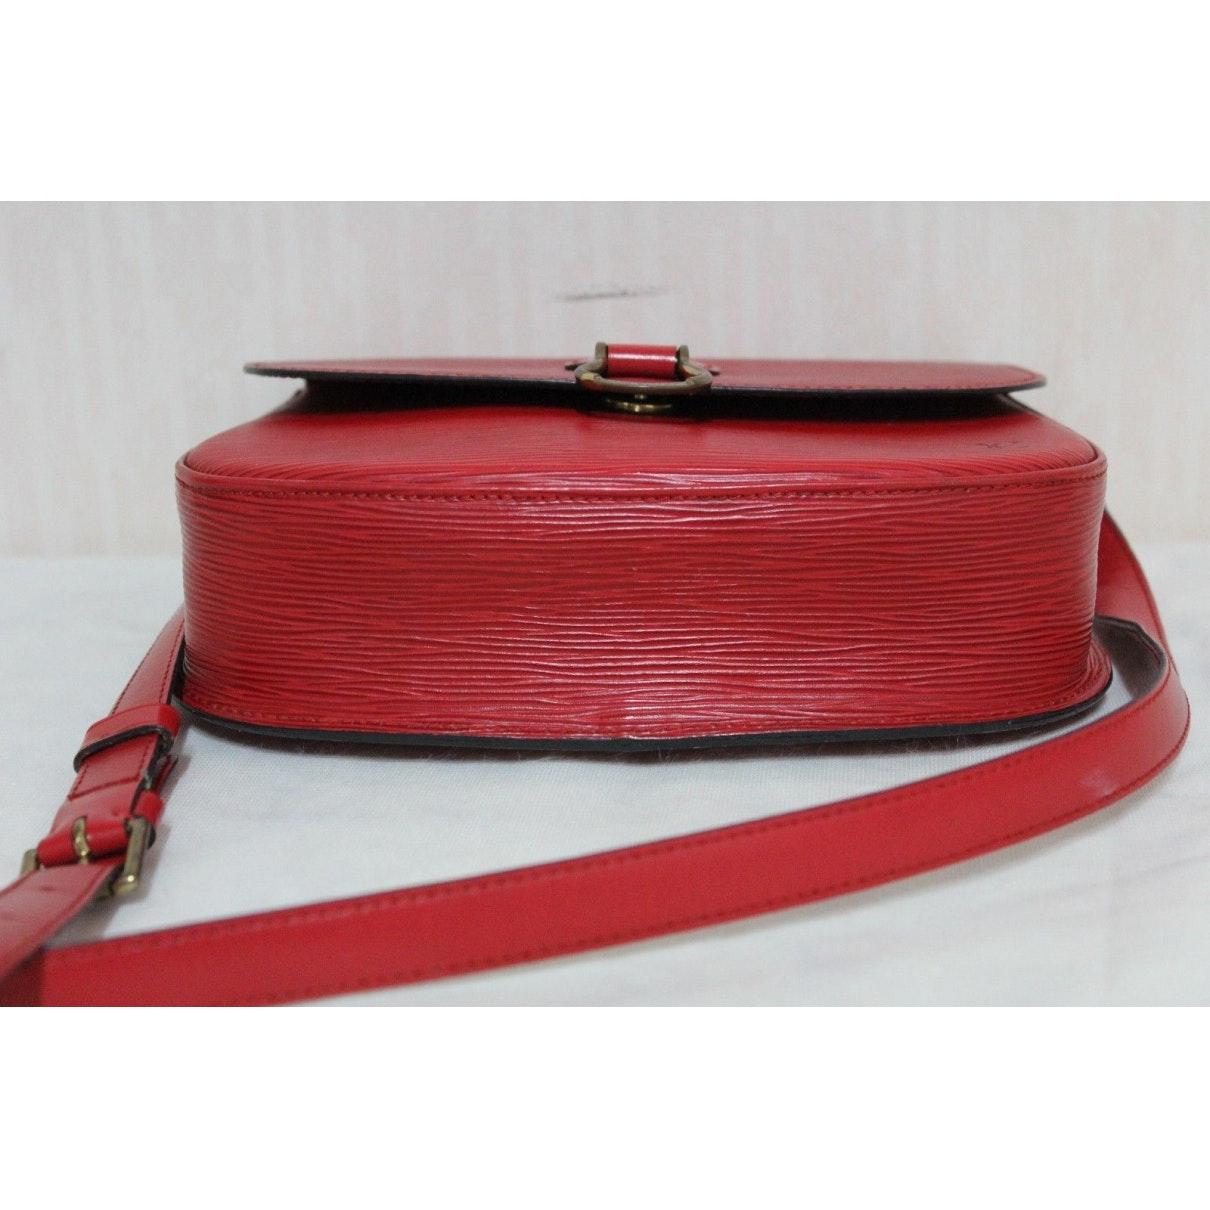 Louis Vuitton Saint Cloud Vintage Red Leather Handbag - Lyst